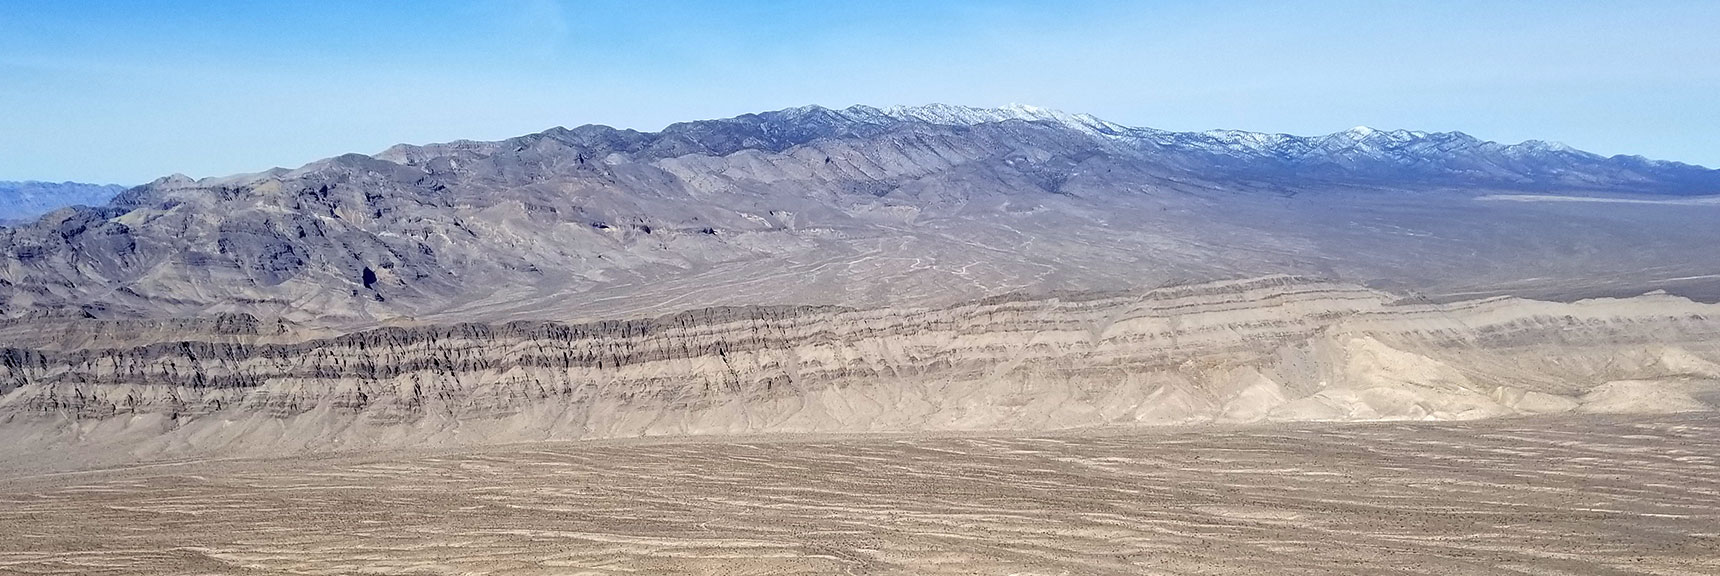 Sheep Range Viewed from Gass Peak Summit, Nevada